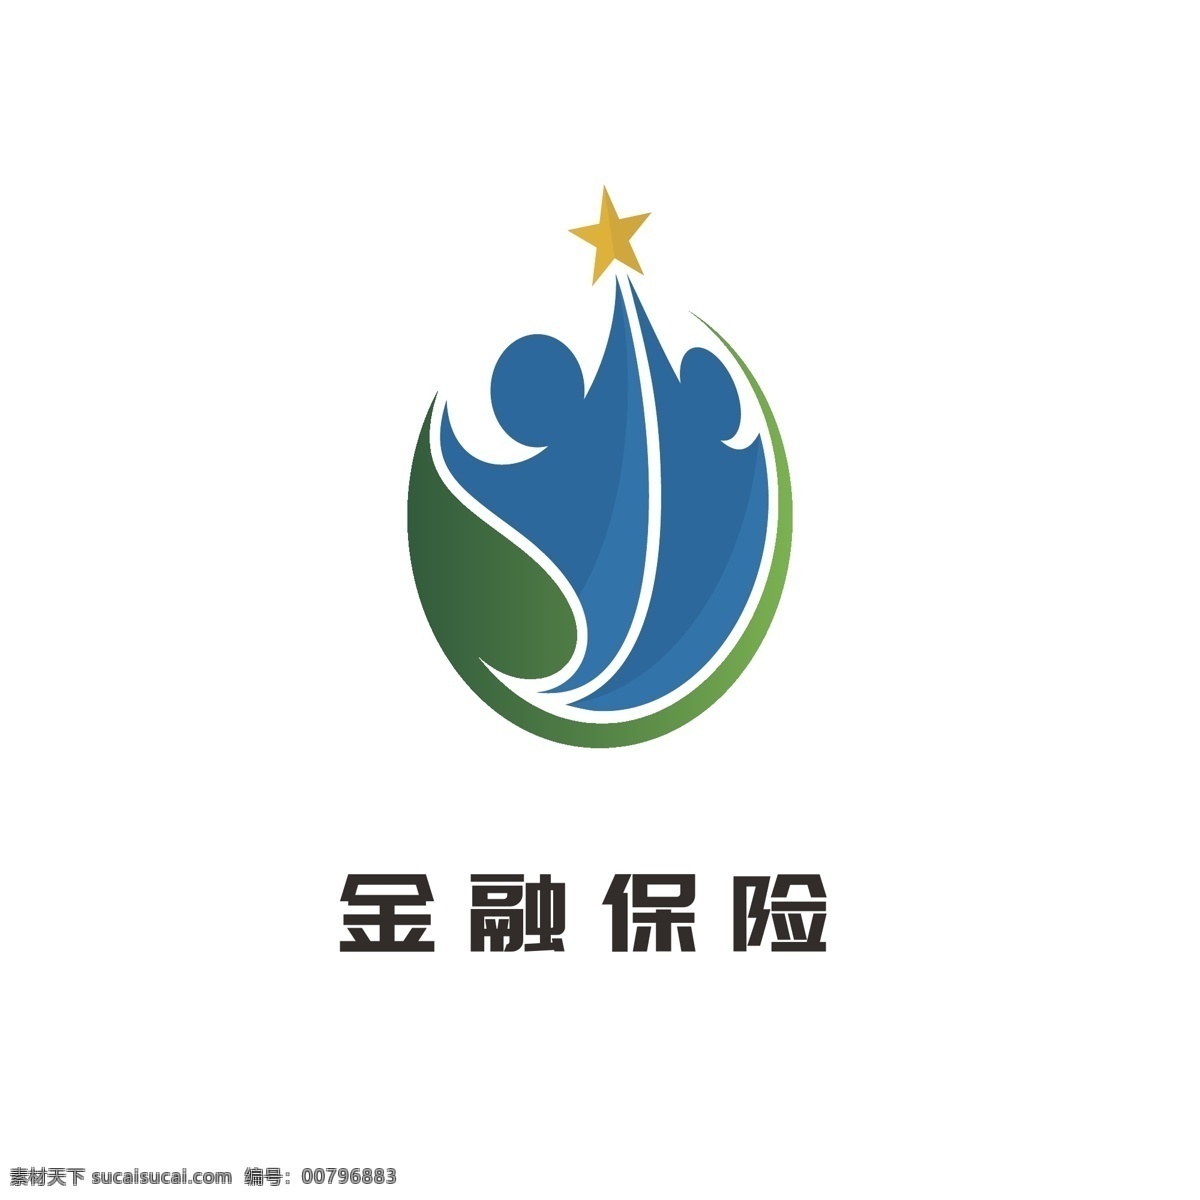 金融保险 理财 投资 logo 大众 通用 标志 证券 金融logo 保险logo 理财logo 大众logo 通用logo